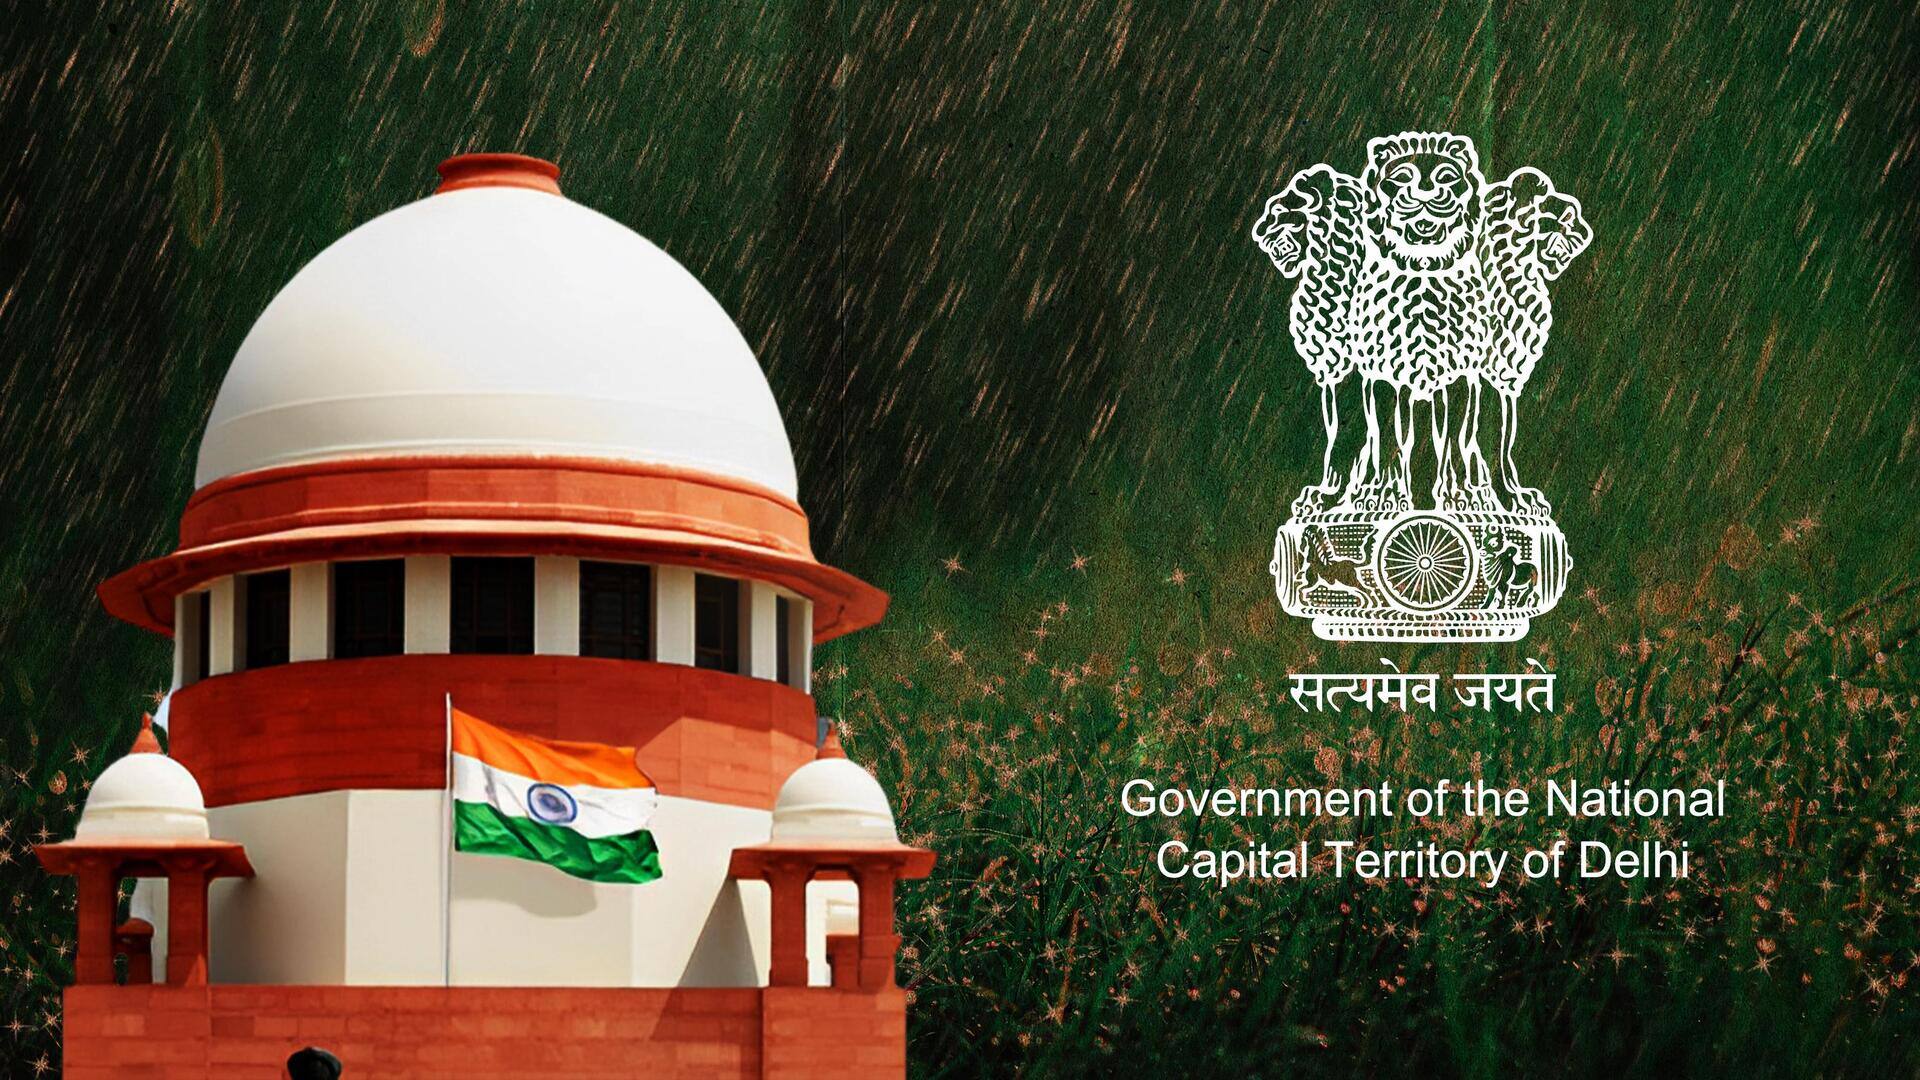 सुप्रीम कोर्ट ने दिल्ली सरकार से कहा- कृत्रिम बारिश से लिए केंद्र से अनुमति लें